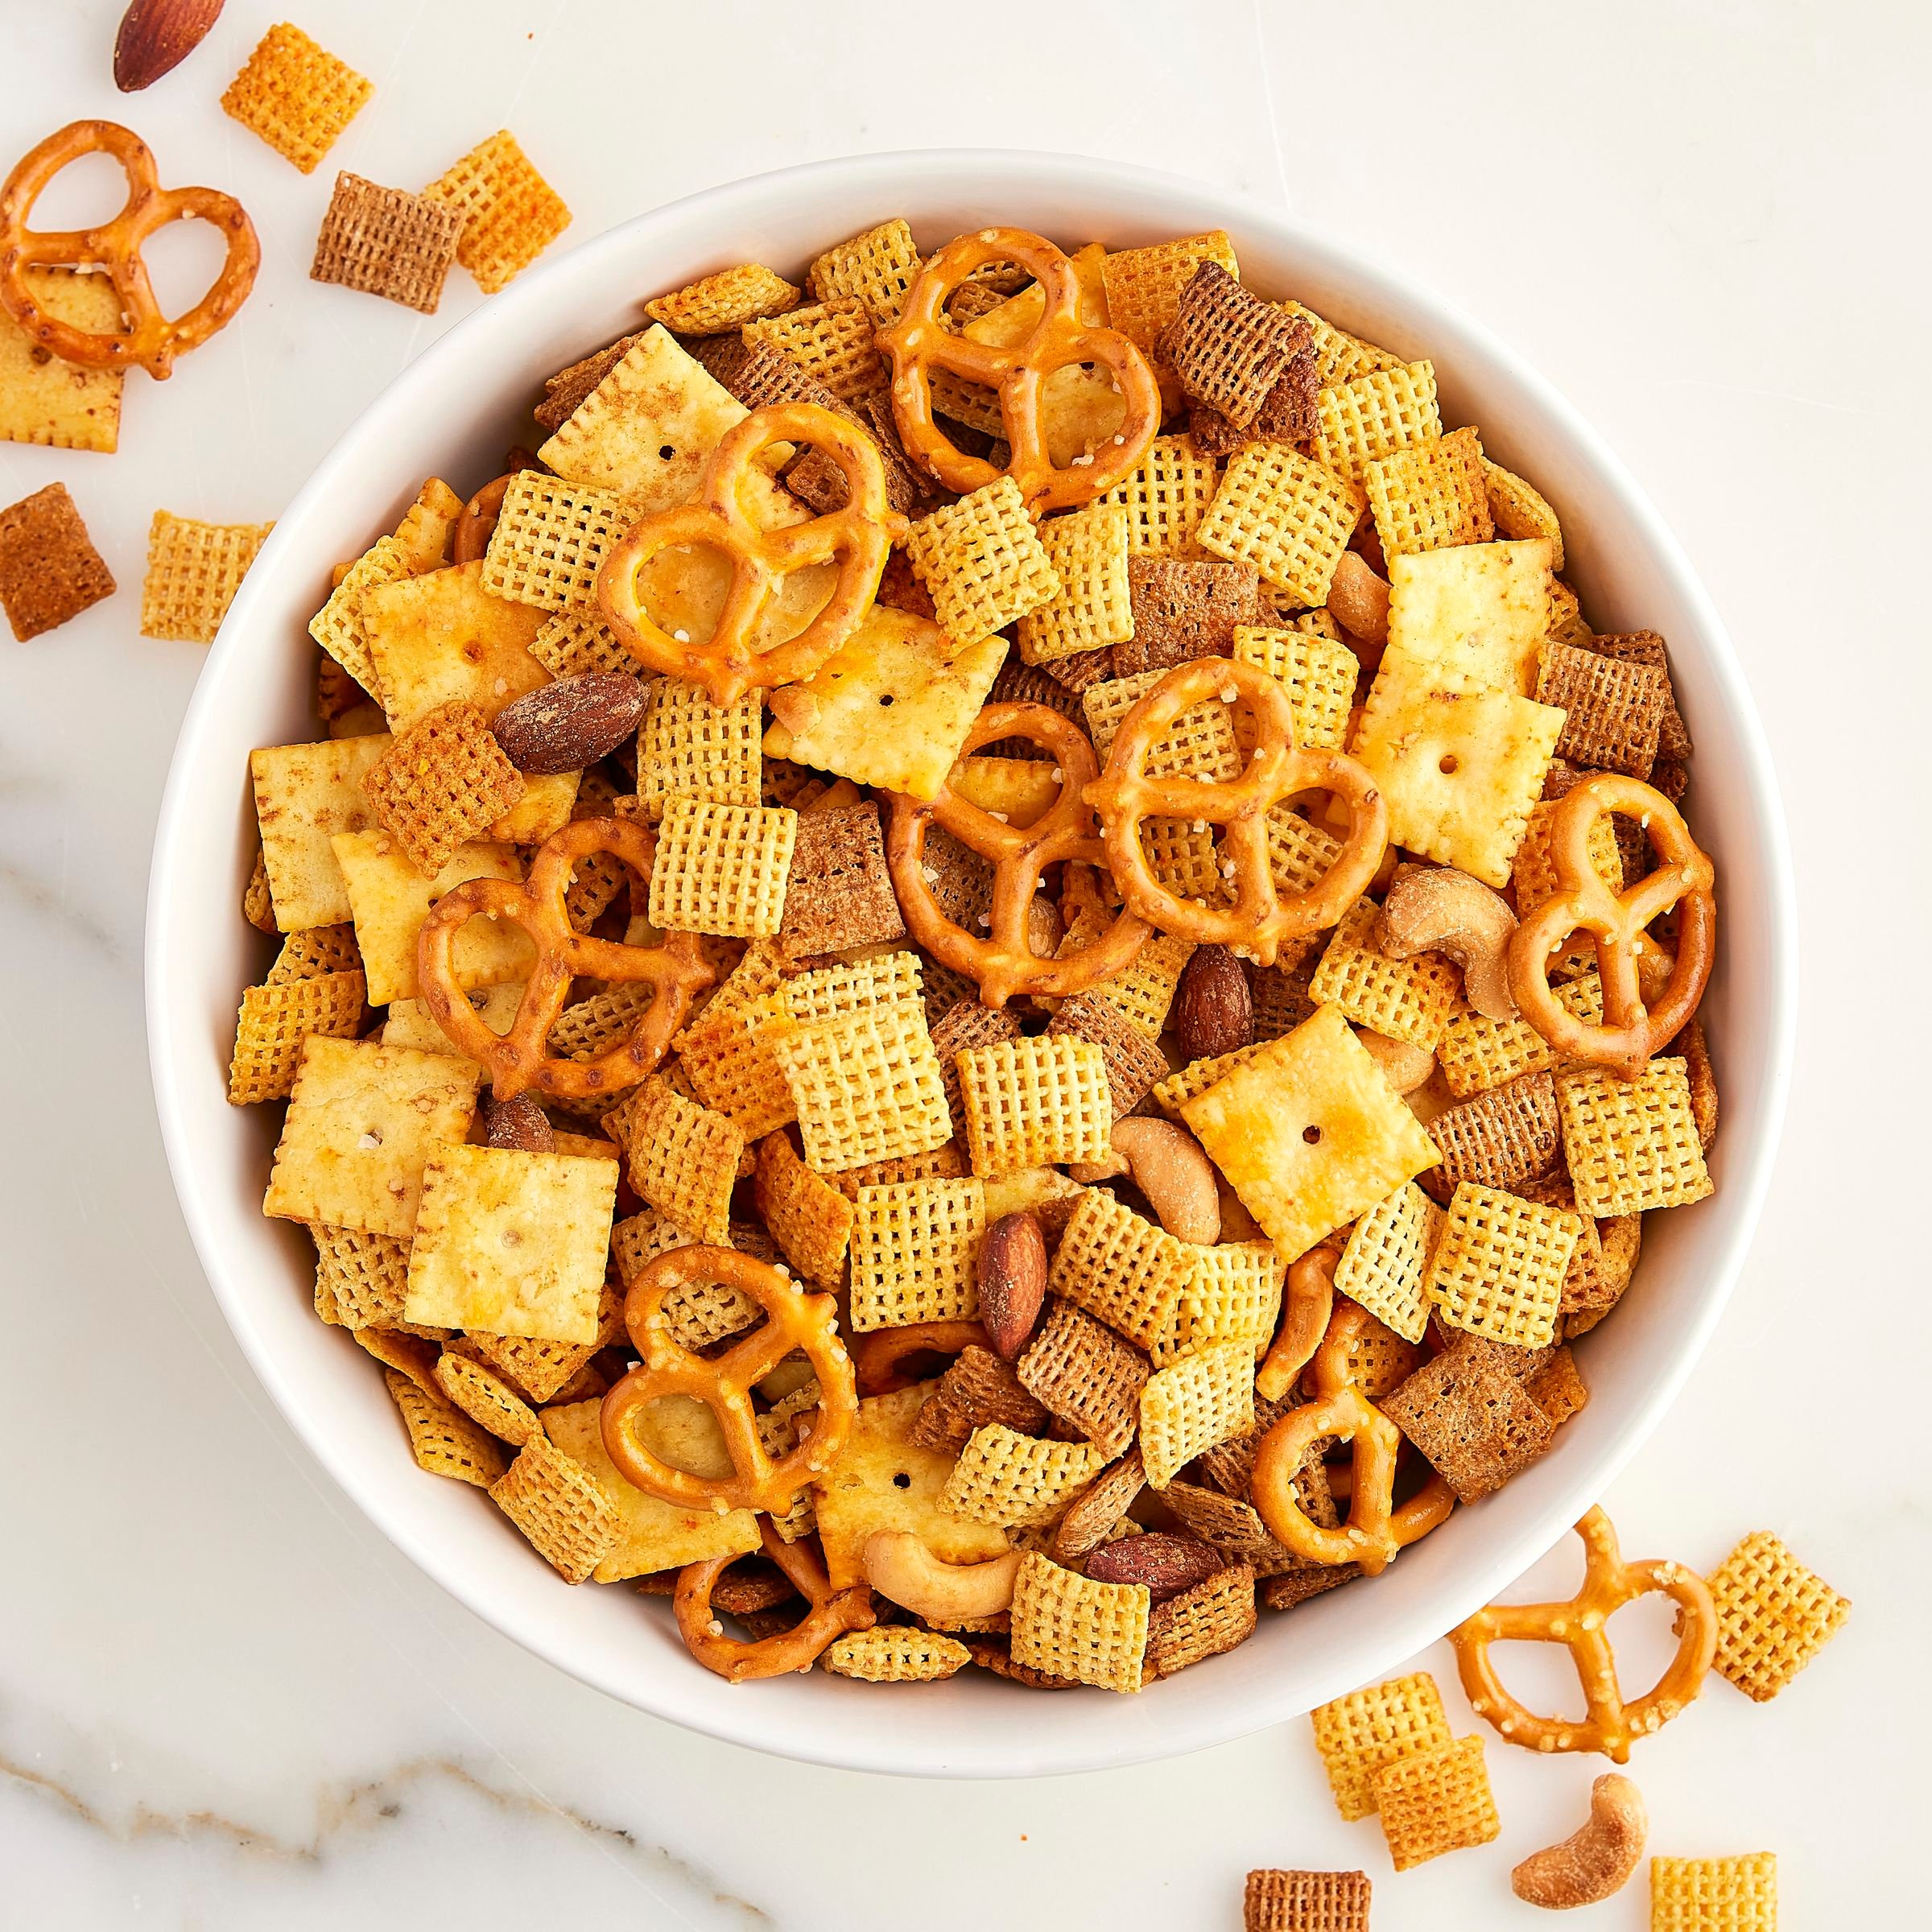  Cereal Corn Chex Cereal, cereales sin gluten, 12 onzas : Comida  Gourmet y Alimentos